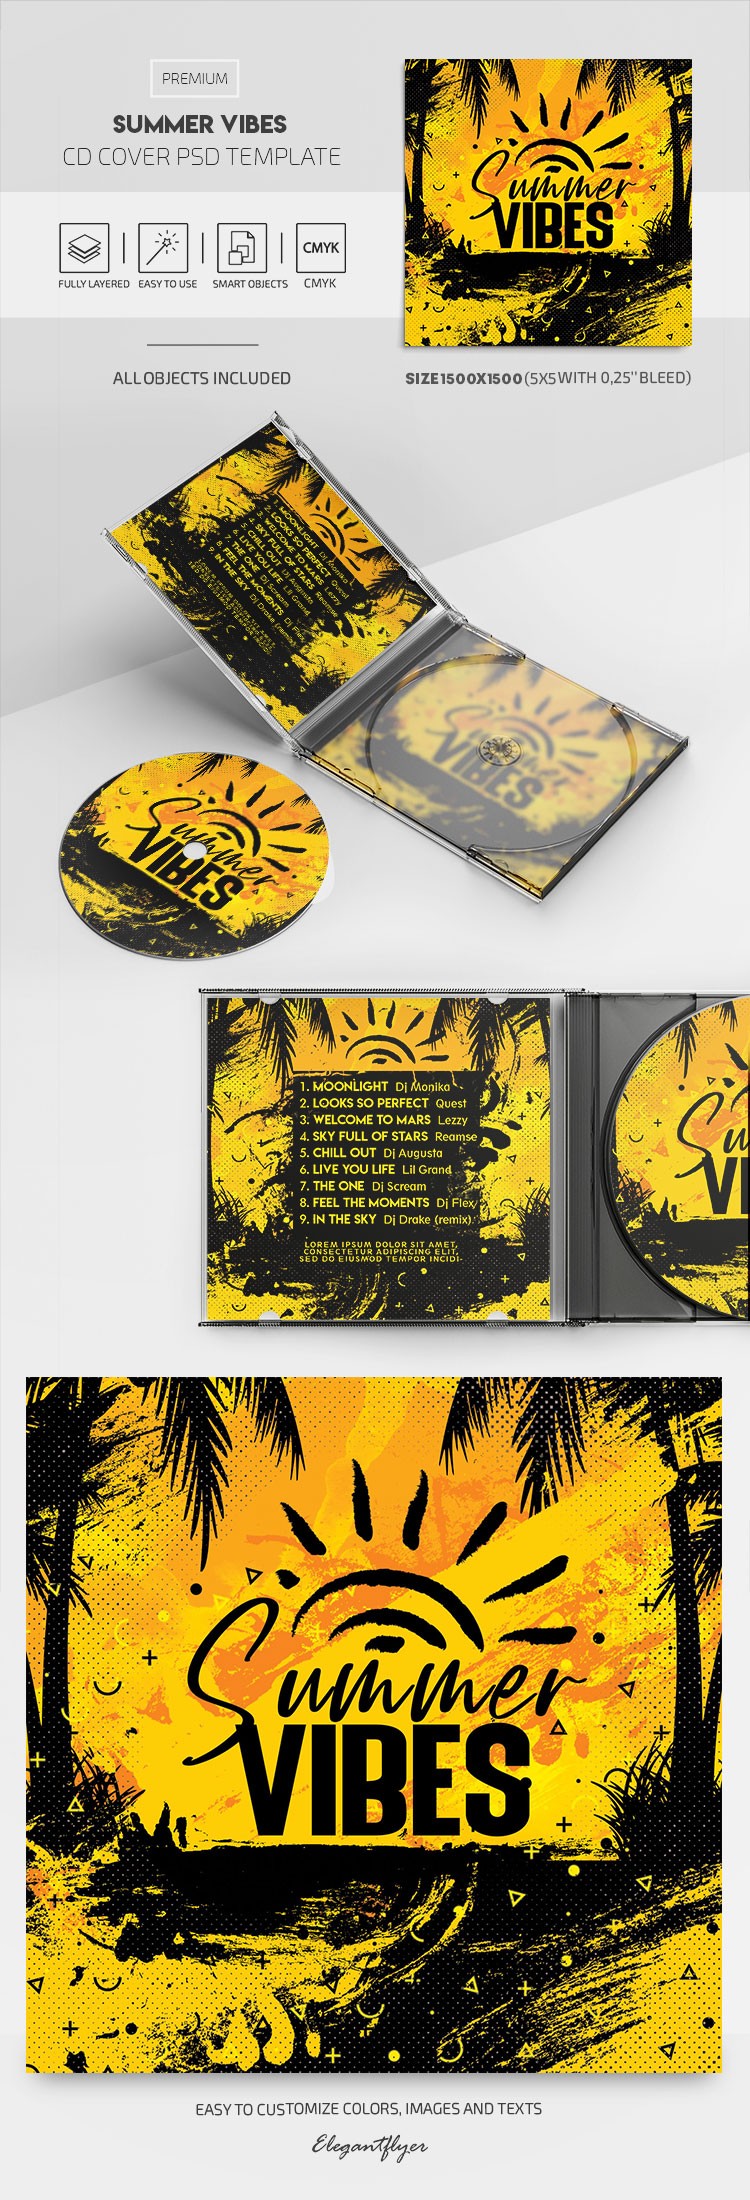 Capa do CD Summer Vibes by ElegantFlyer